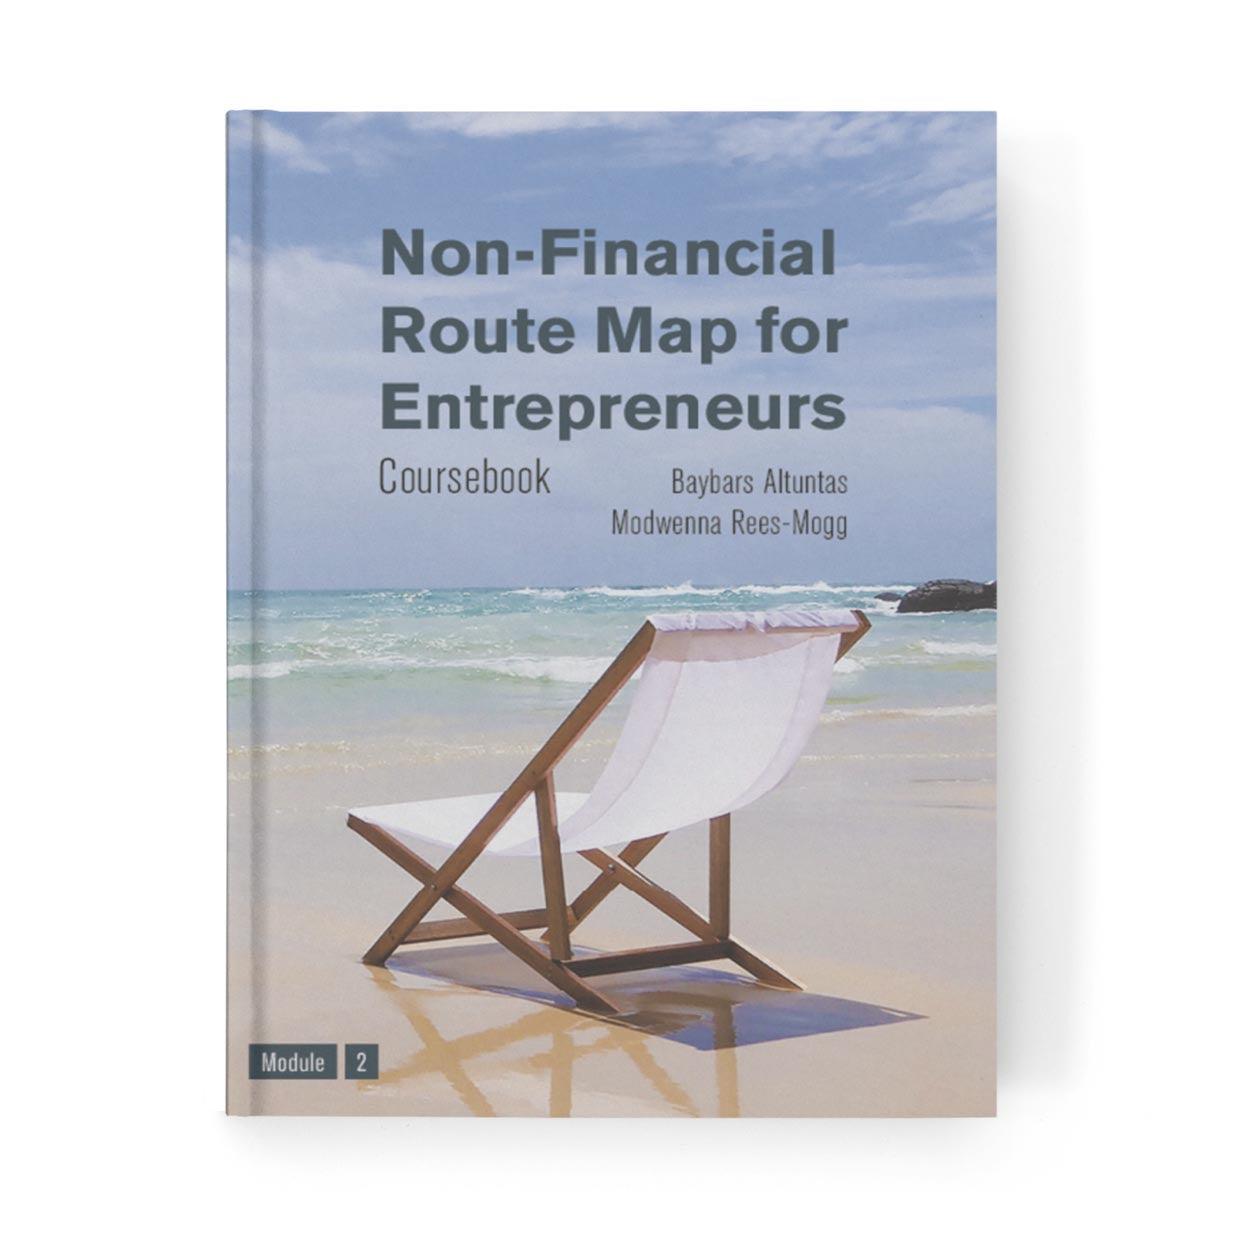 Non-Financial Route Map for Entrepreneurs Coursebook